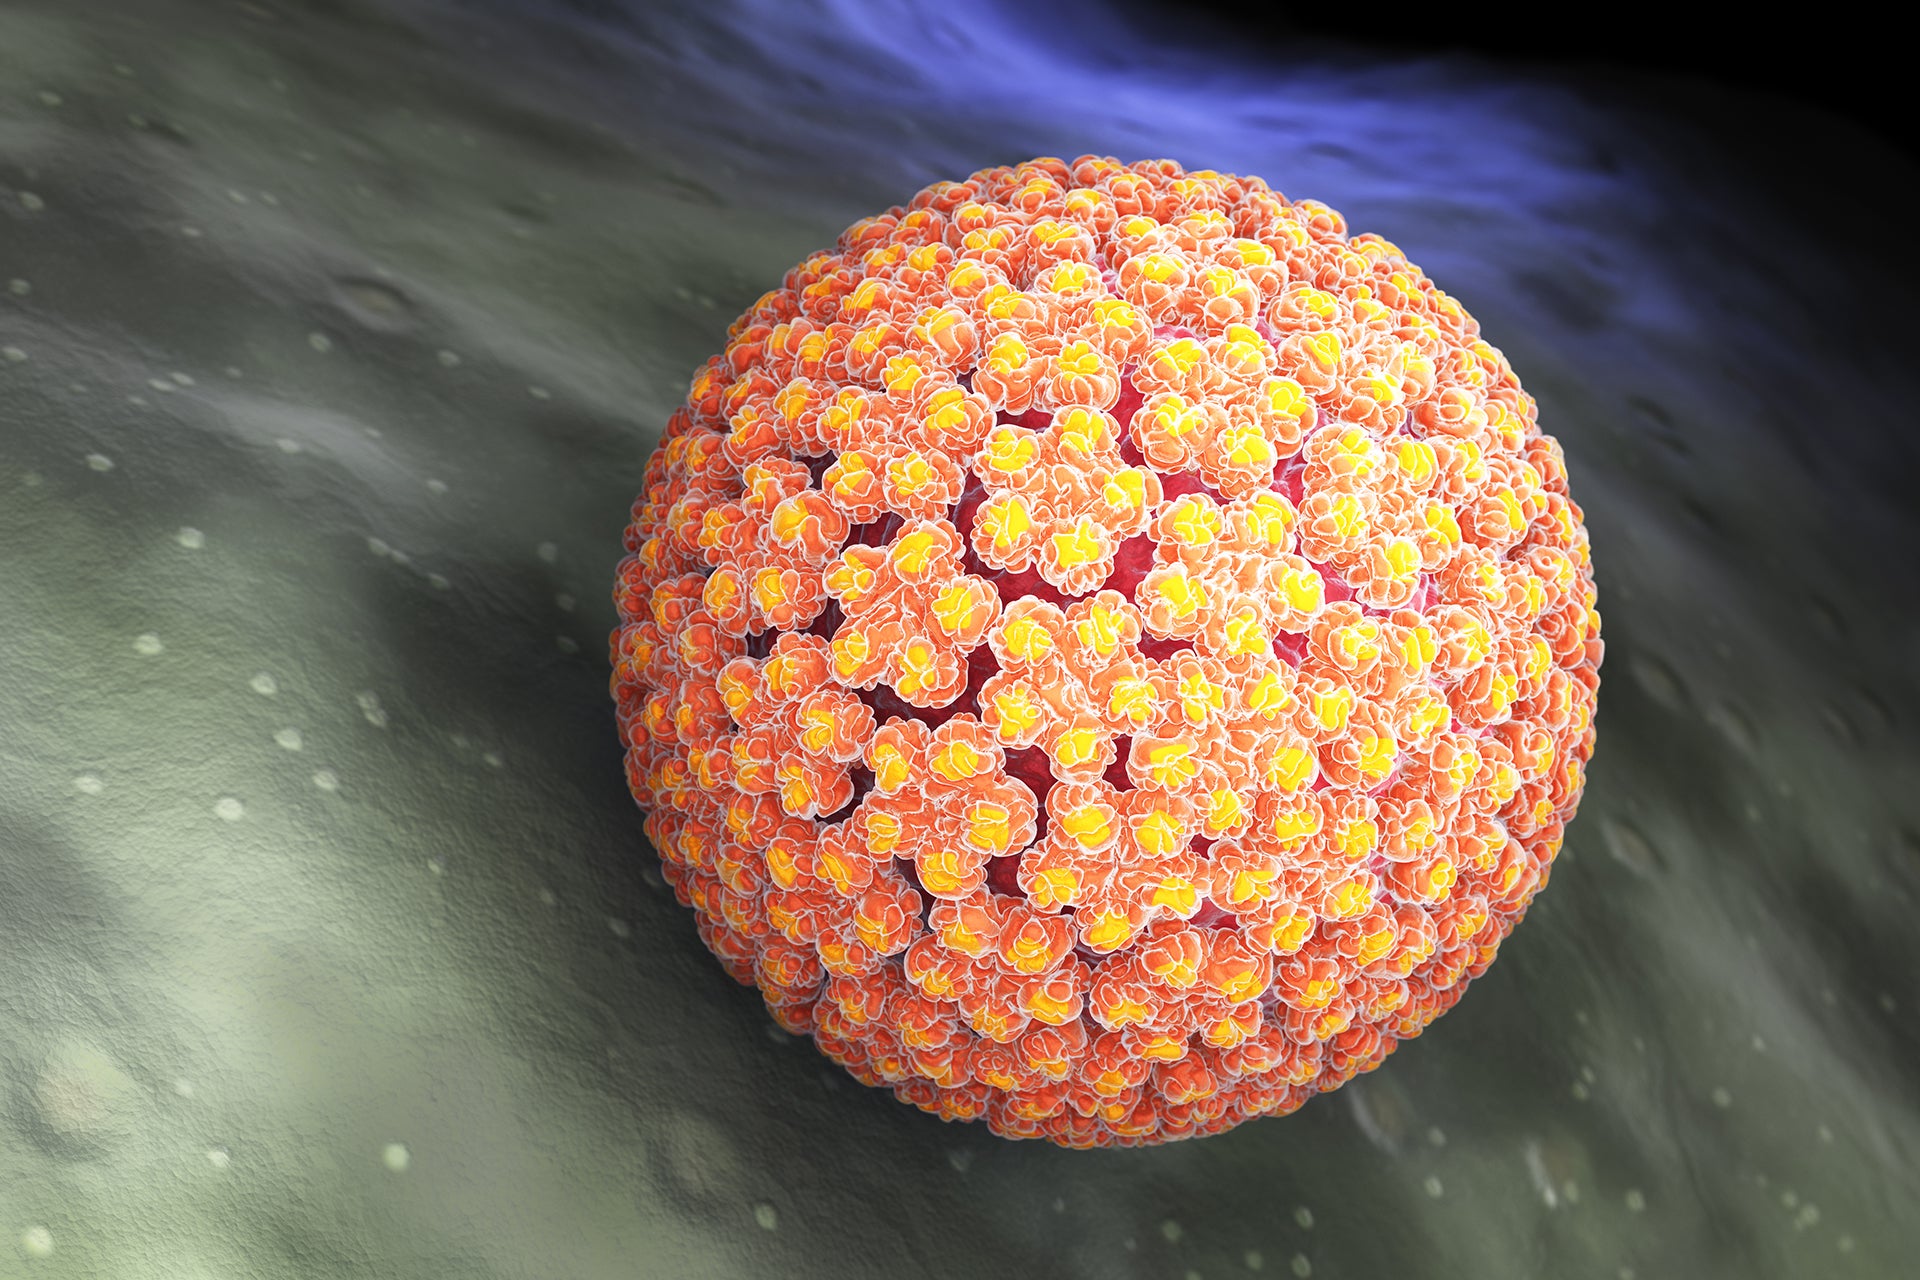 HPV rimedi naturali che funzionano e privi di controindicazioni